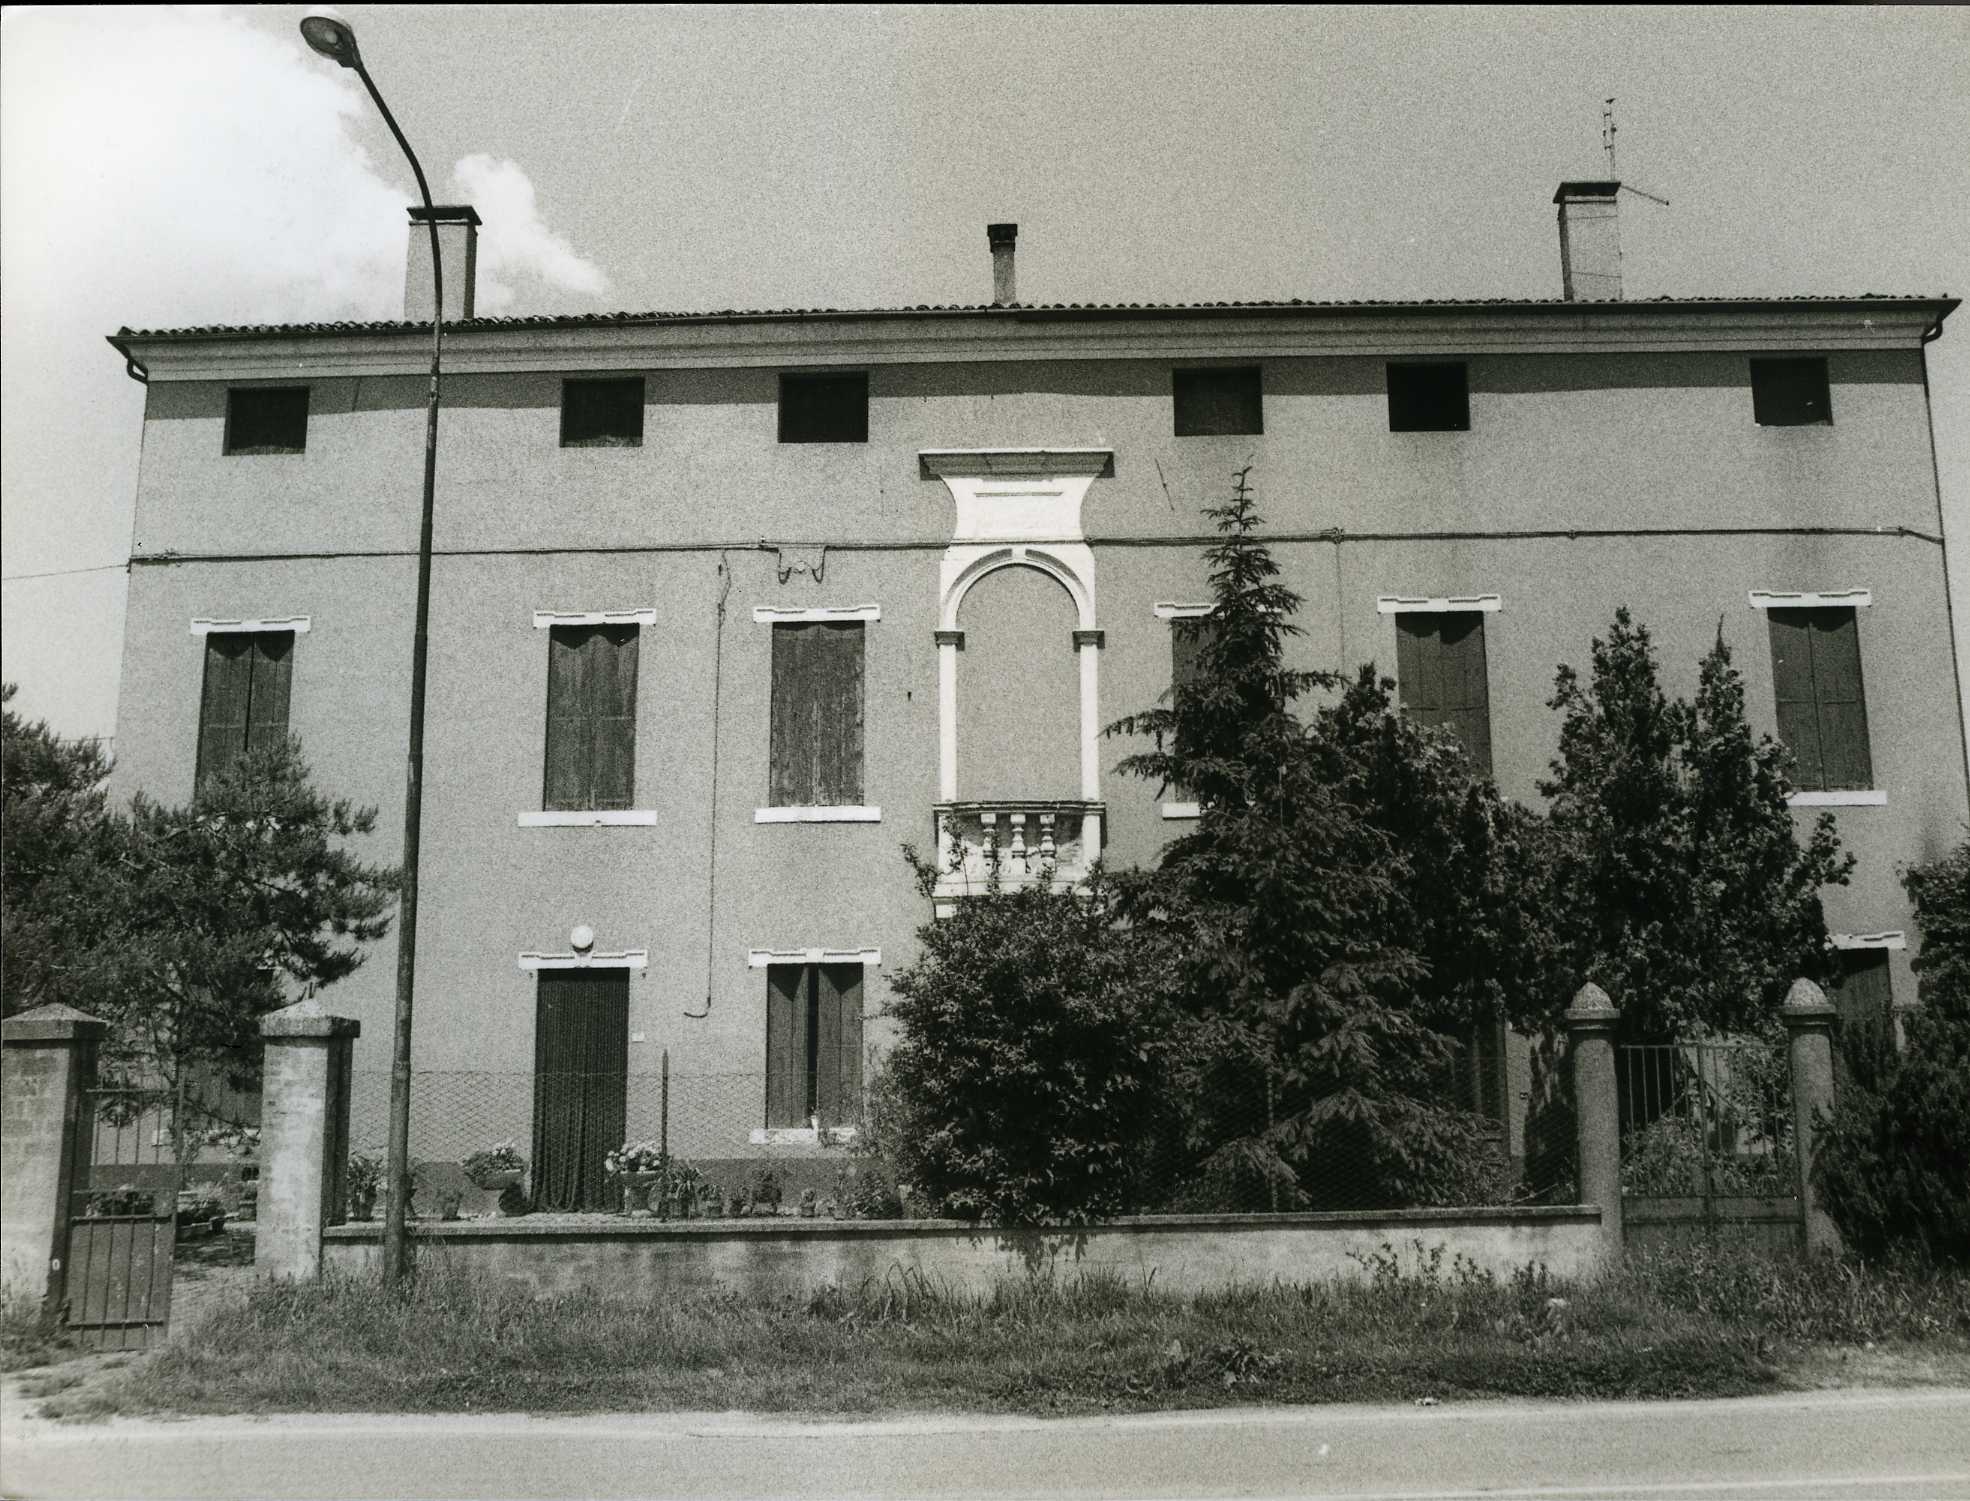 Villa Durlo Zanovello (casa, padronale) - Pojana Maggiore (VI)  (XVIII)